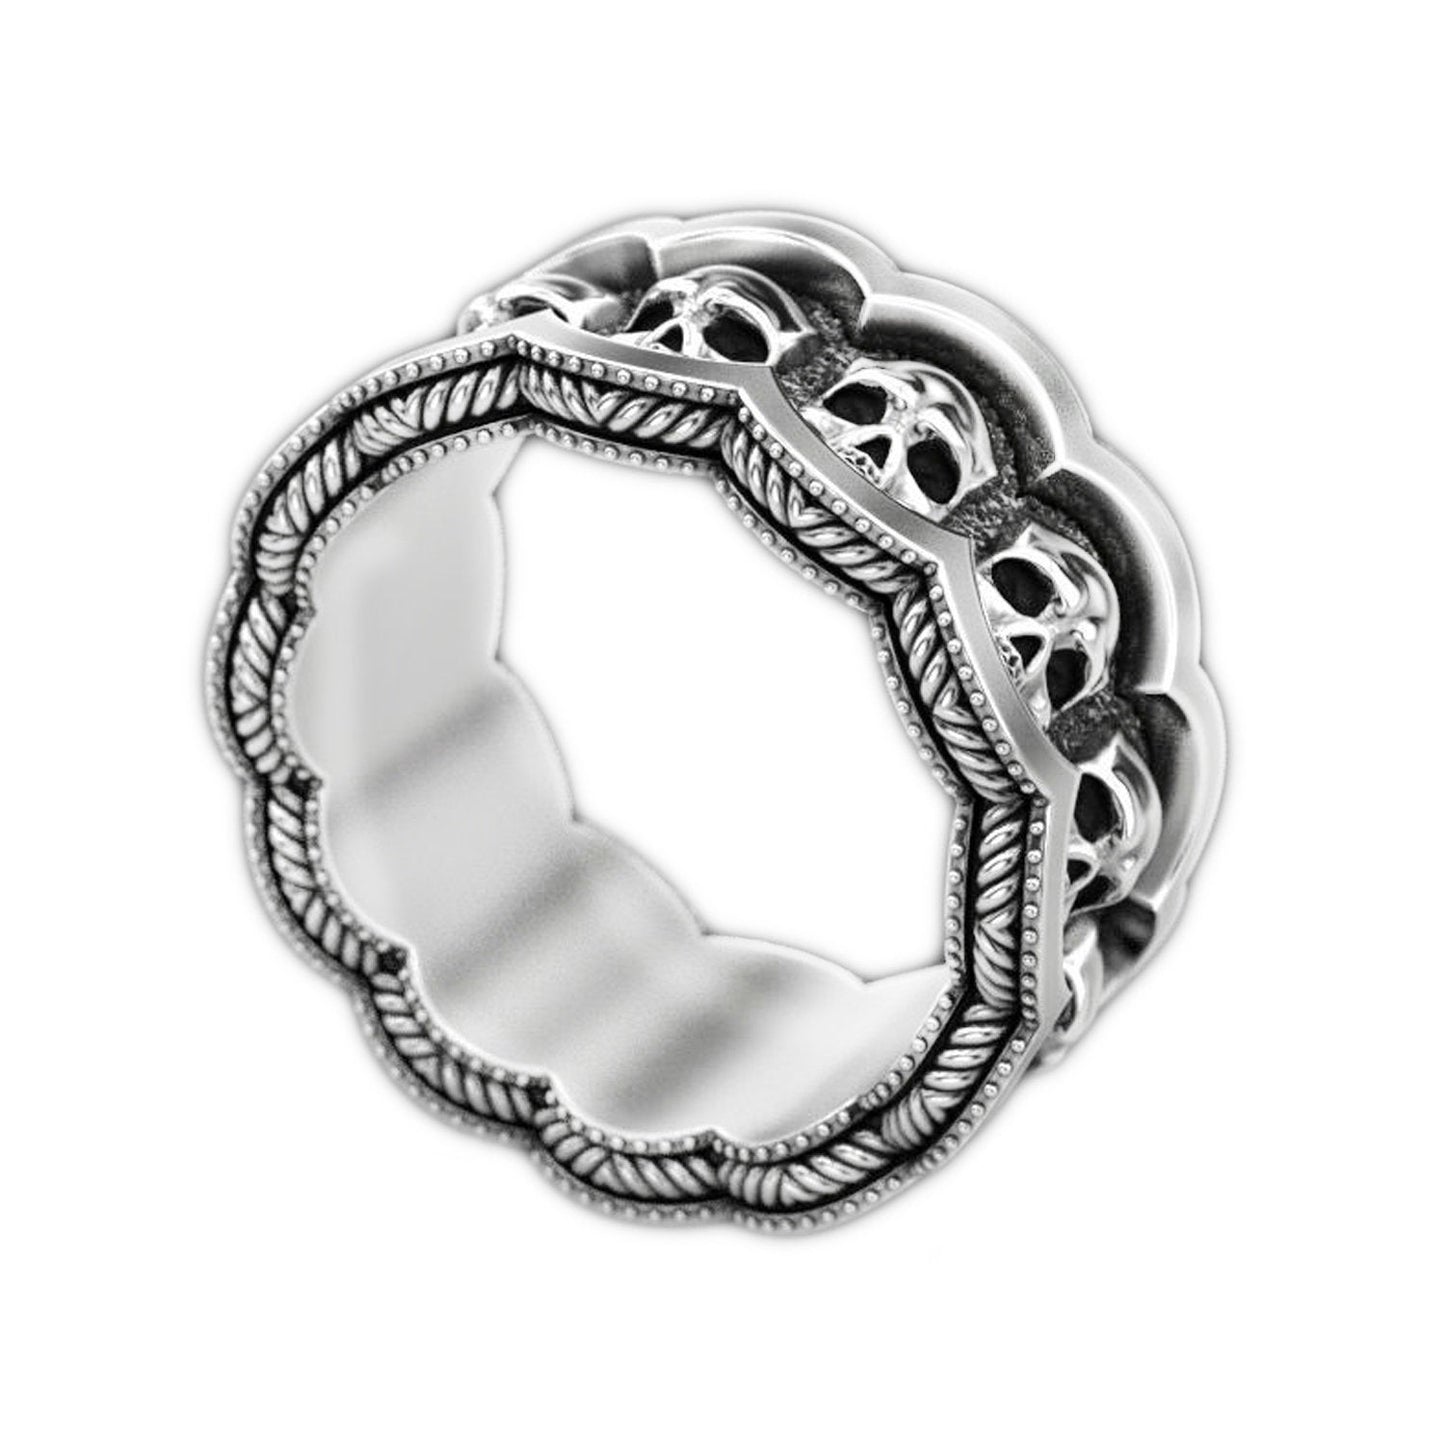 Gotický zásnubní prsten lebky, tmavé stříbro, prsten Pinky, prsten s kostrou, prsten Memento Mori, Santa Muerte